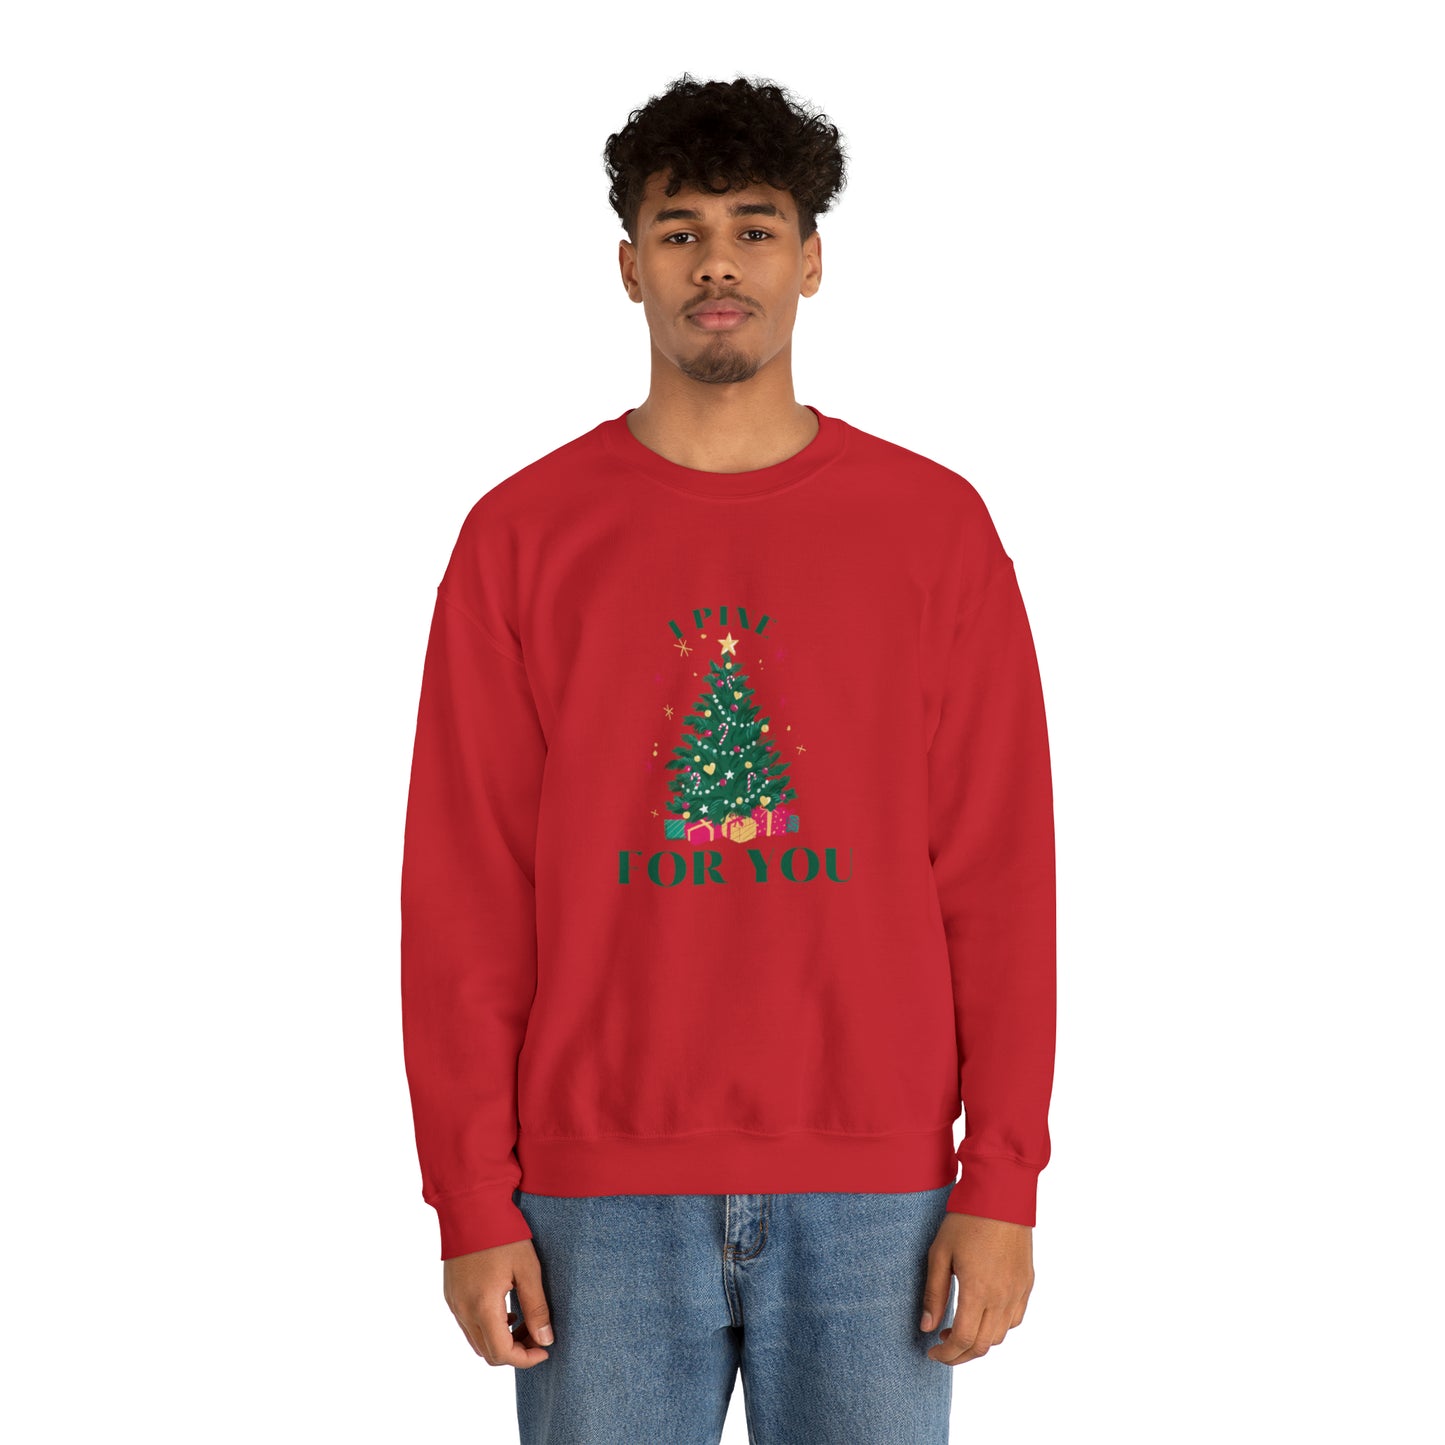 I Pine For You Dad Joke Christmas Sweatshirt